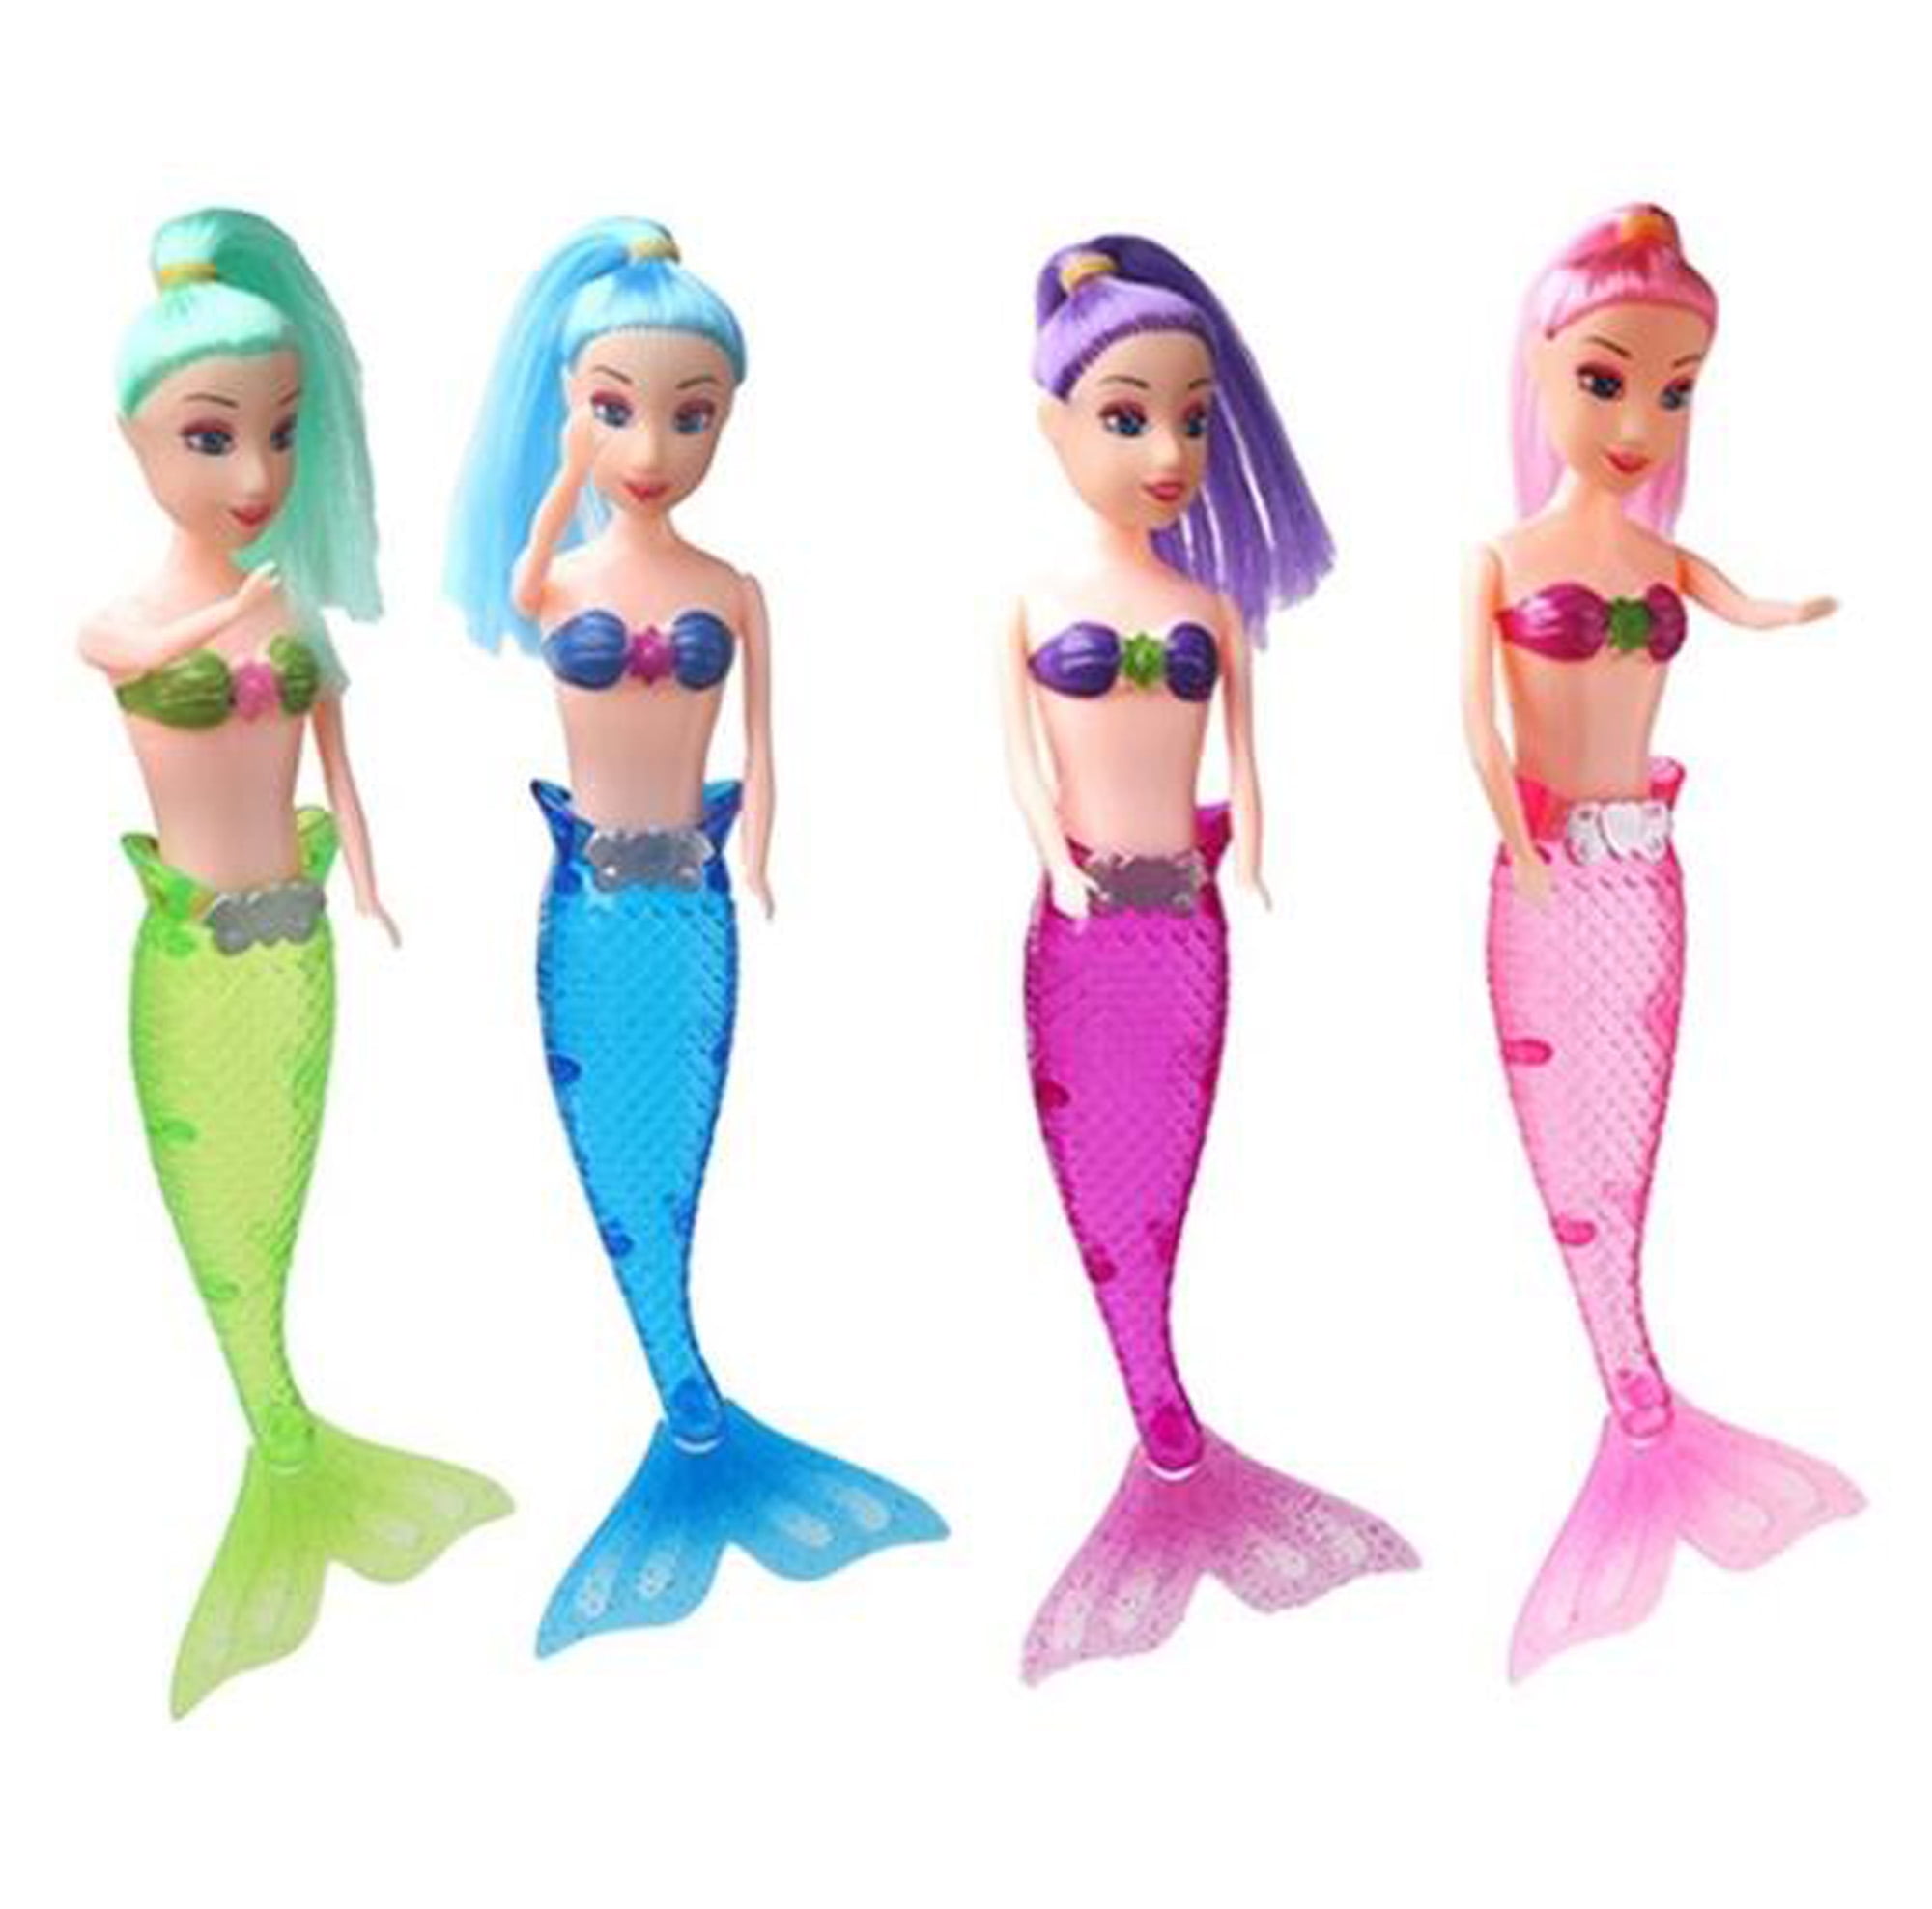 Colors Varies 1 Black African American Mermaid Doll Toy 11 Bathtub Water Pool Toy